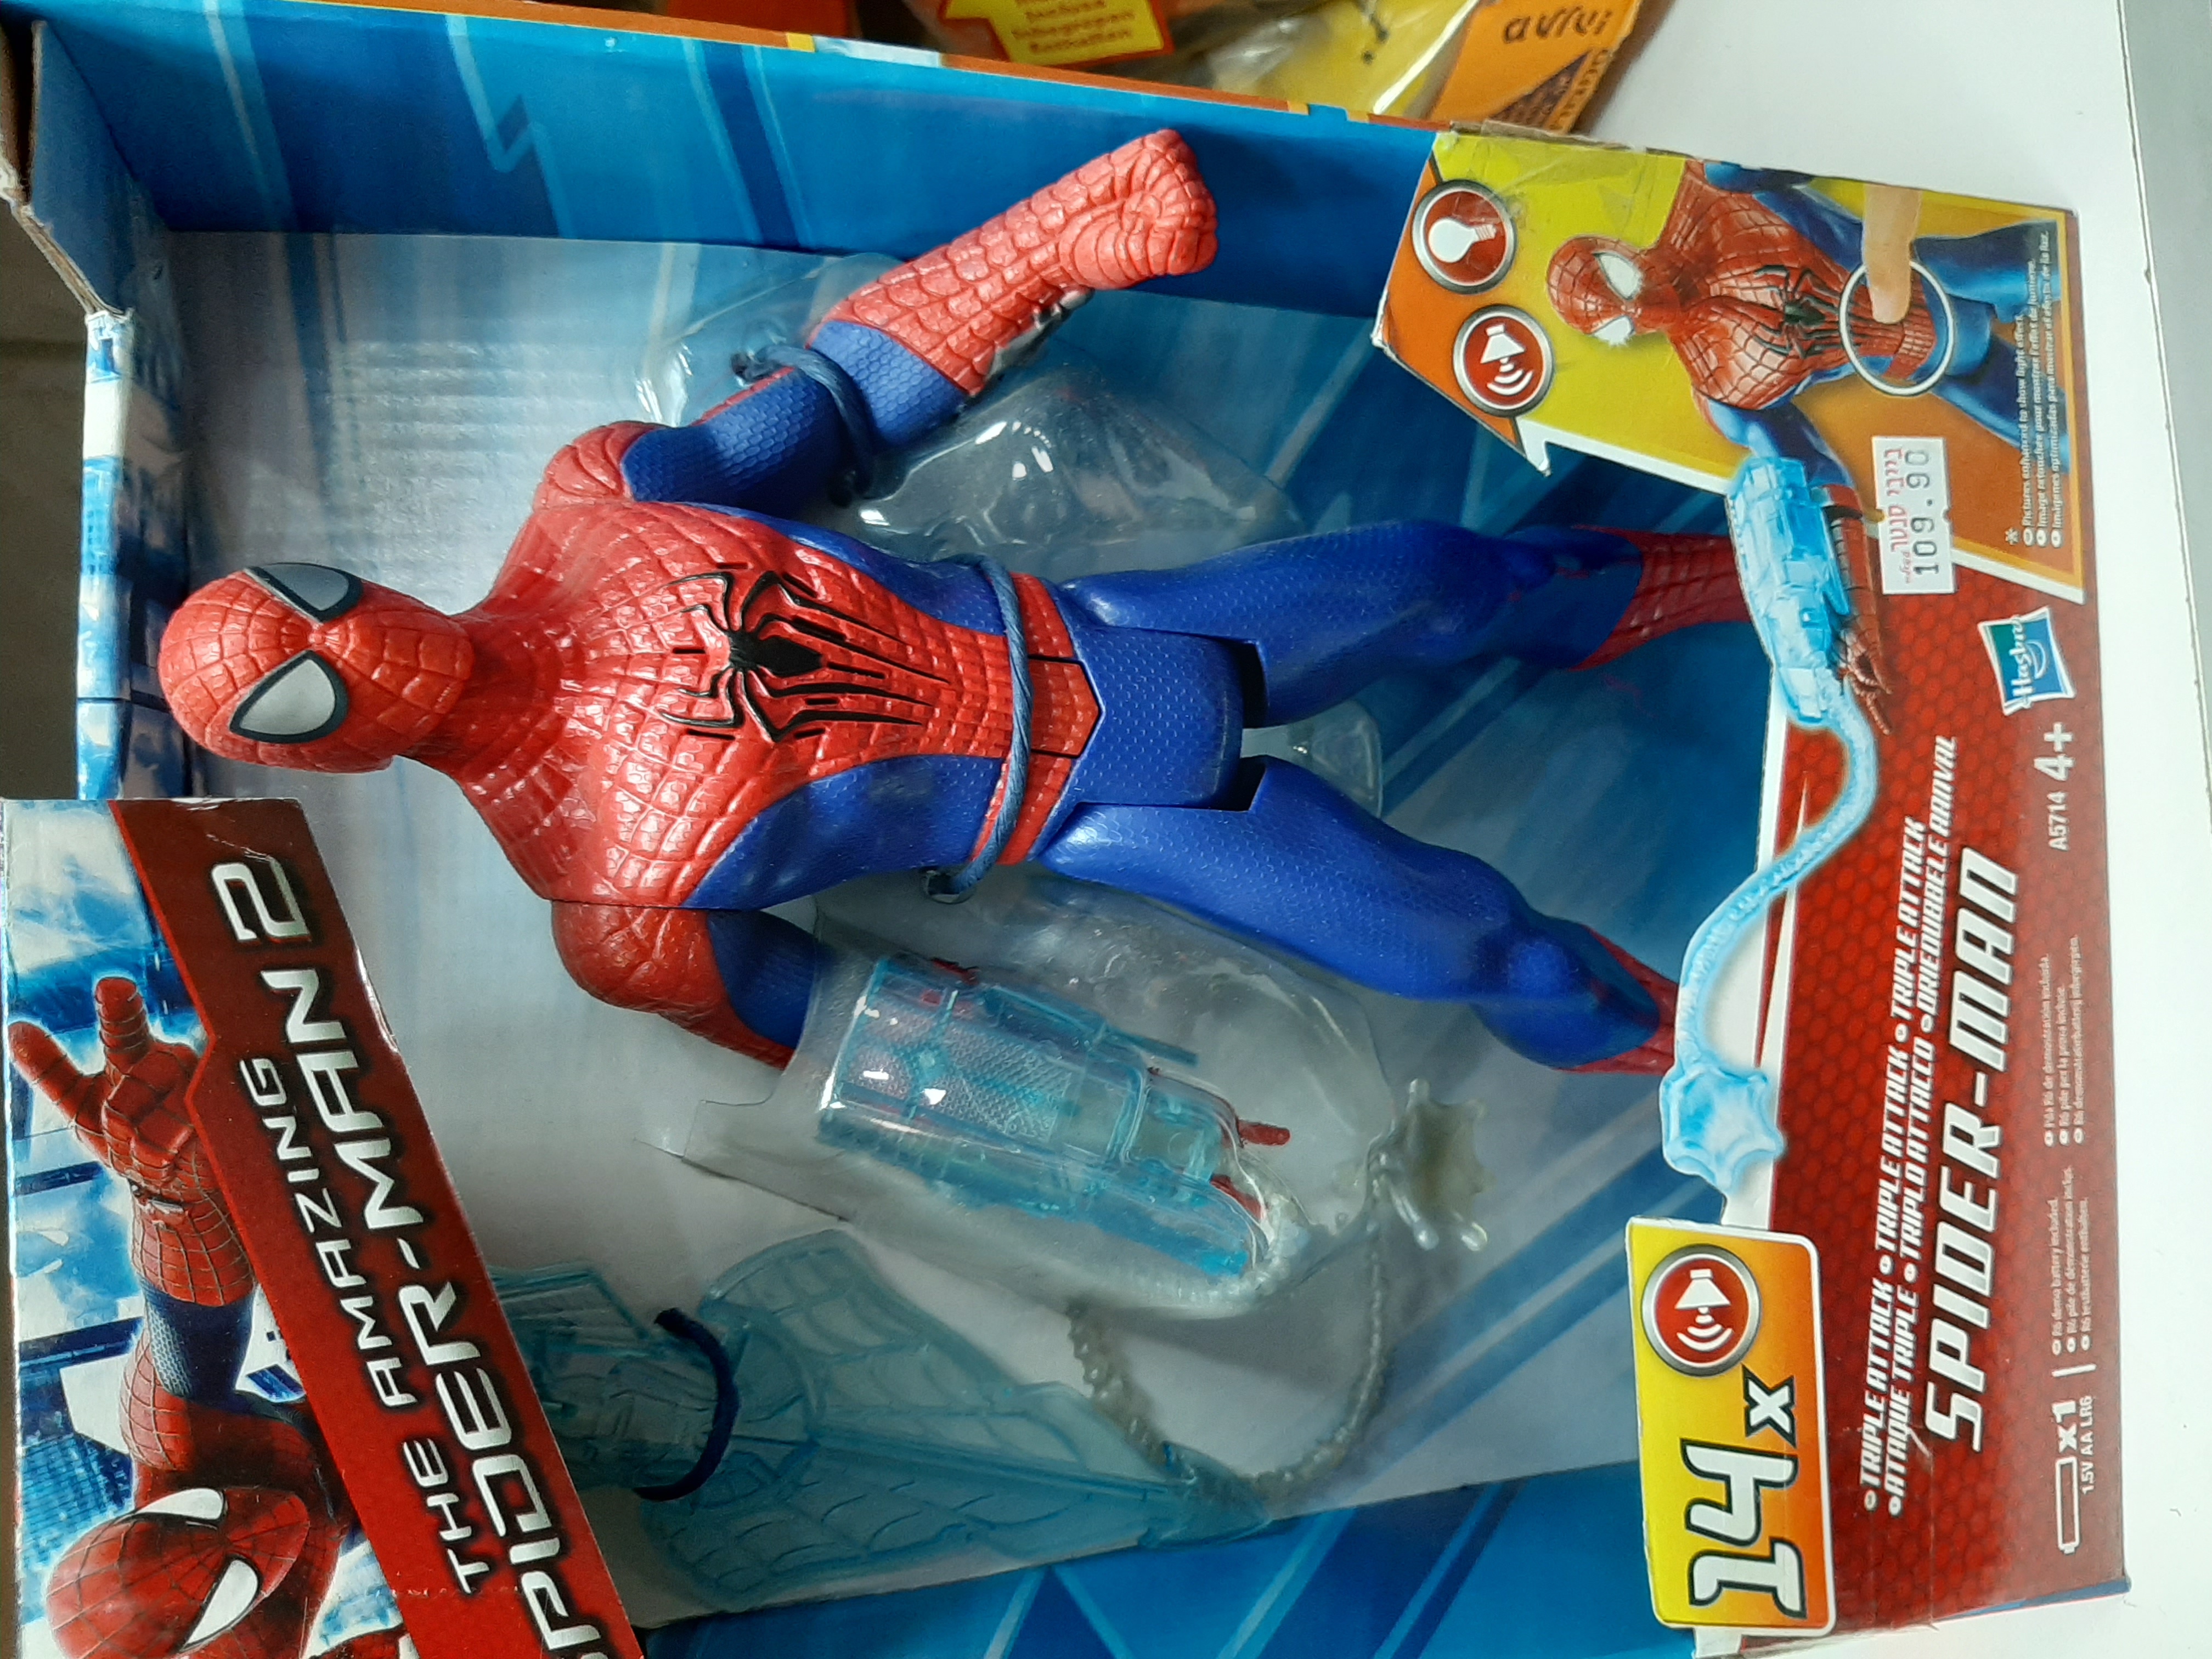 בובת SPIDER-MAN המקורית עם כורי העכביש ביד שמאל וגפיים זזות להנאה מושלמת של משחק לילדכם